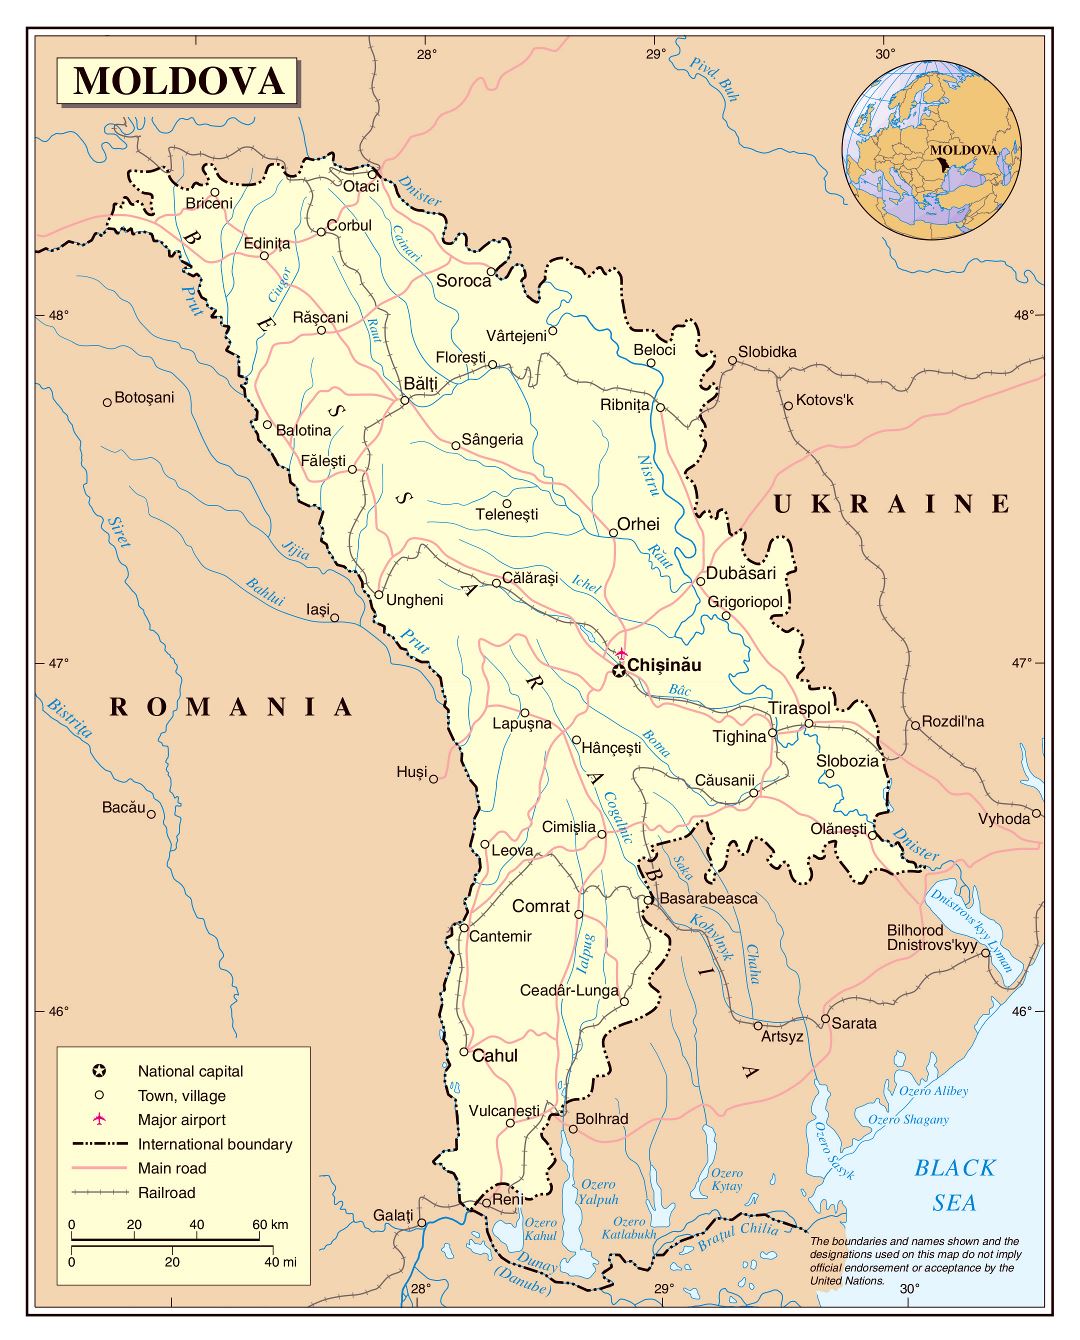 Большая детальная политическая карта Молдовы с дорогами, железными дорогами, крупными городами и аэропортами